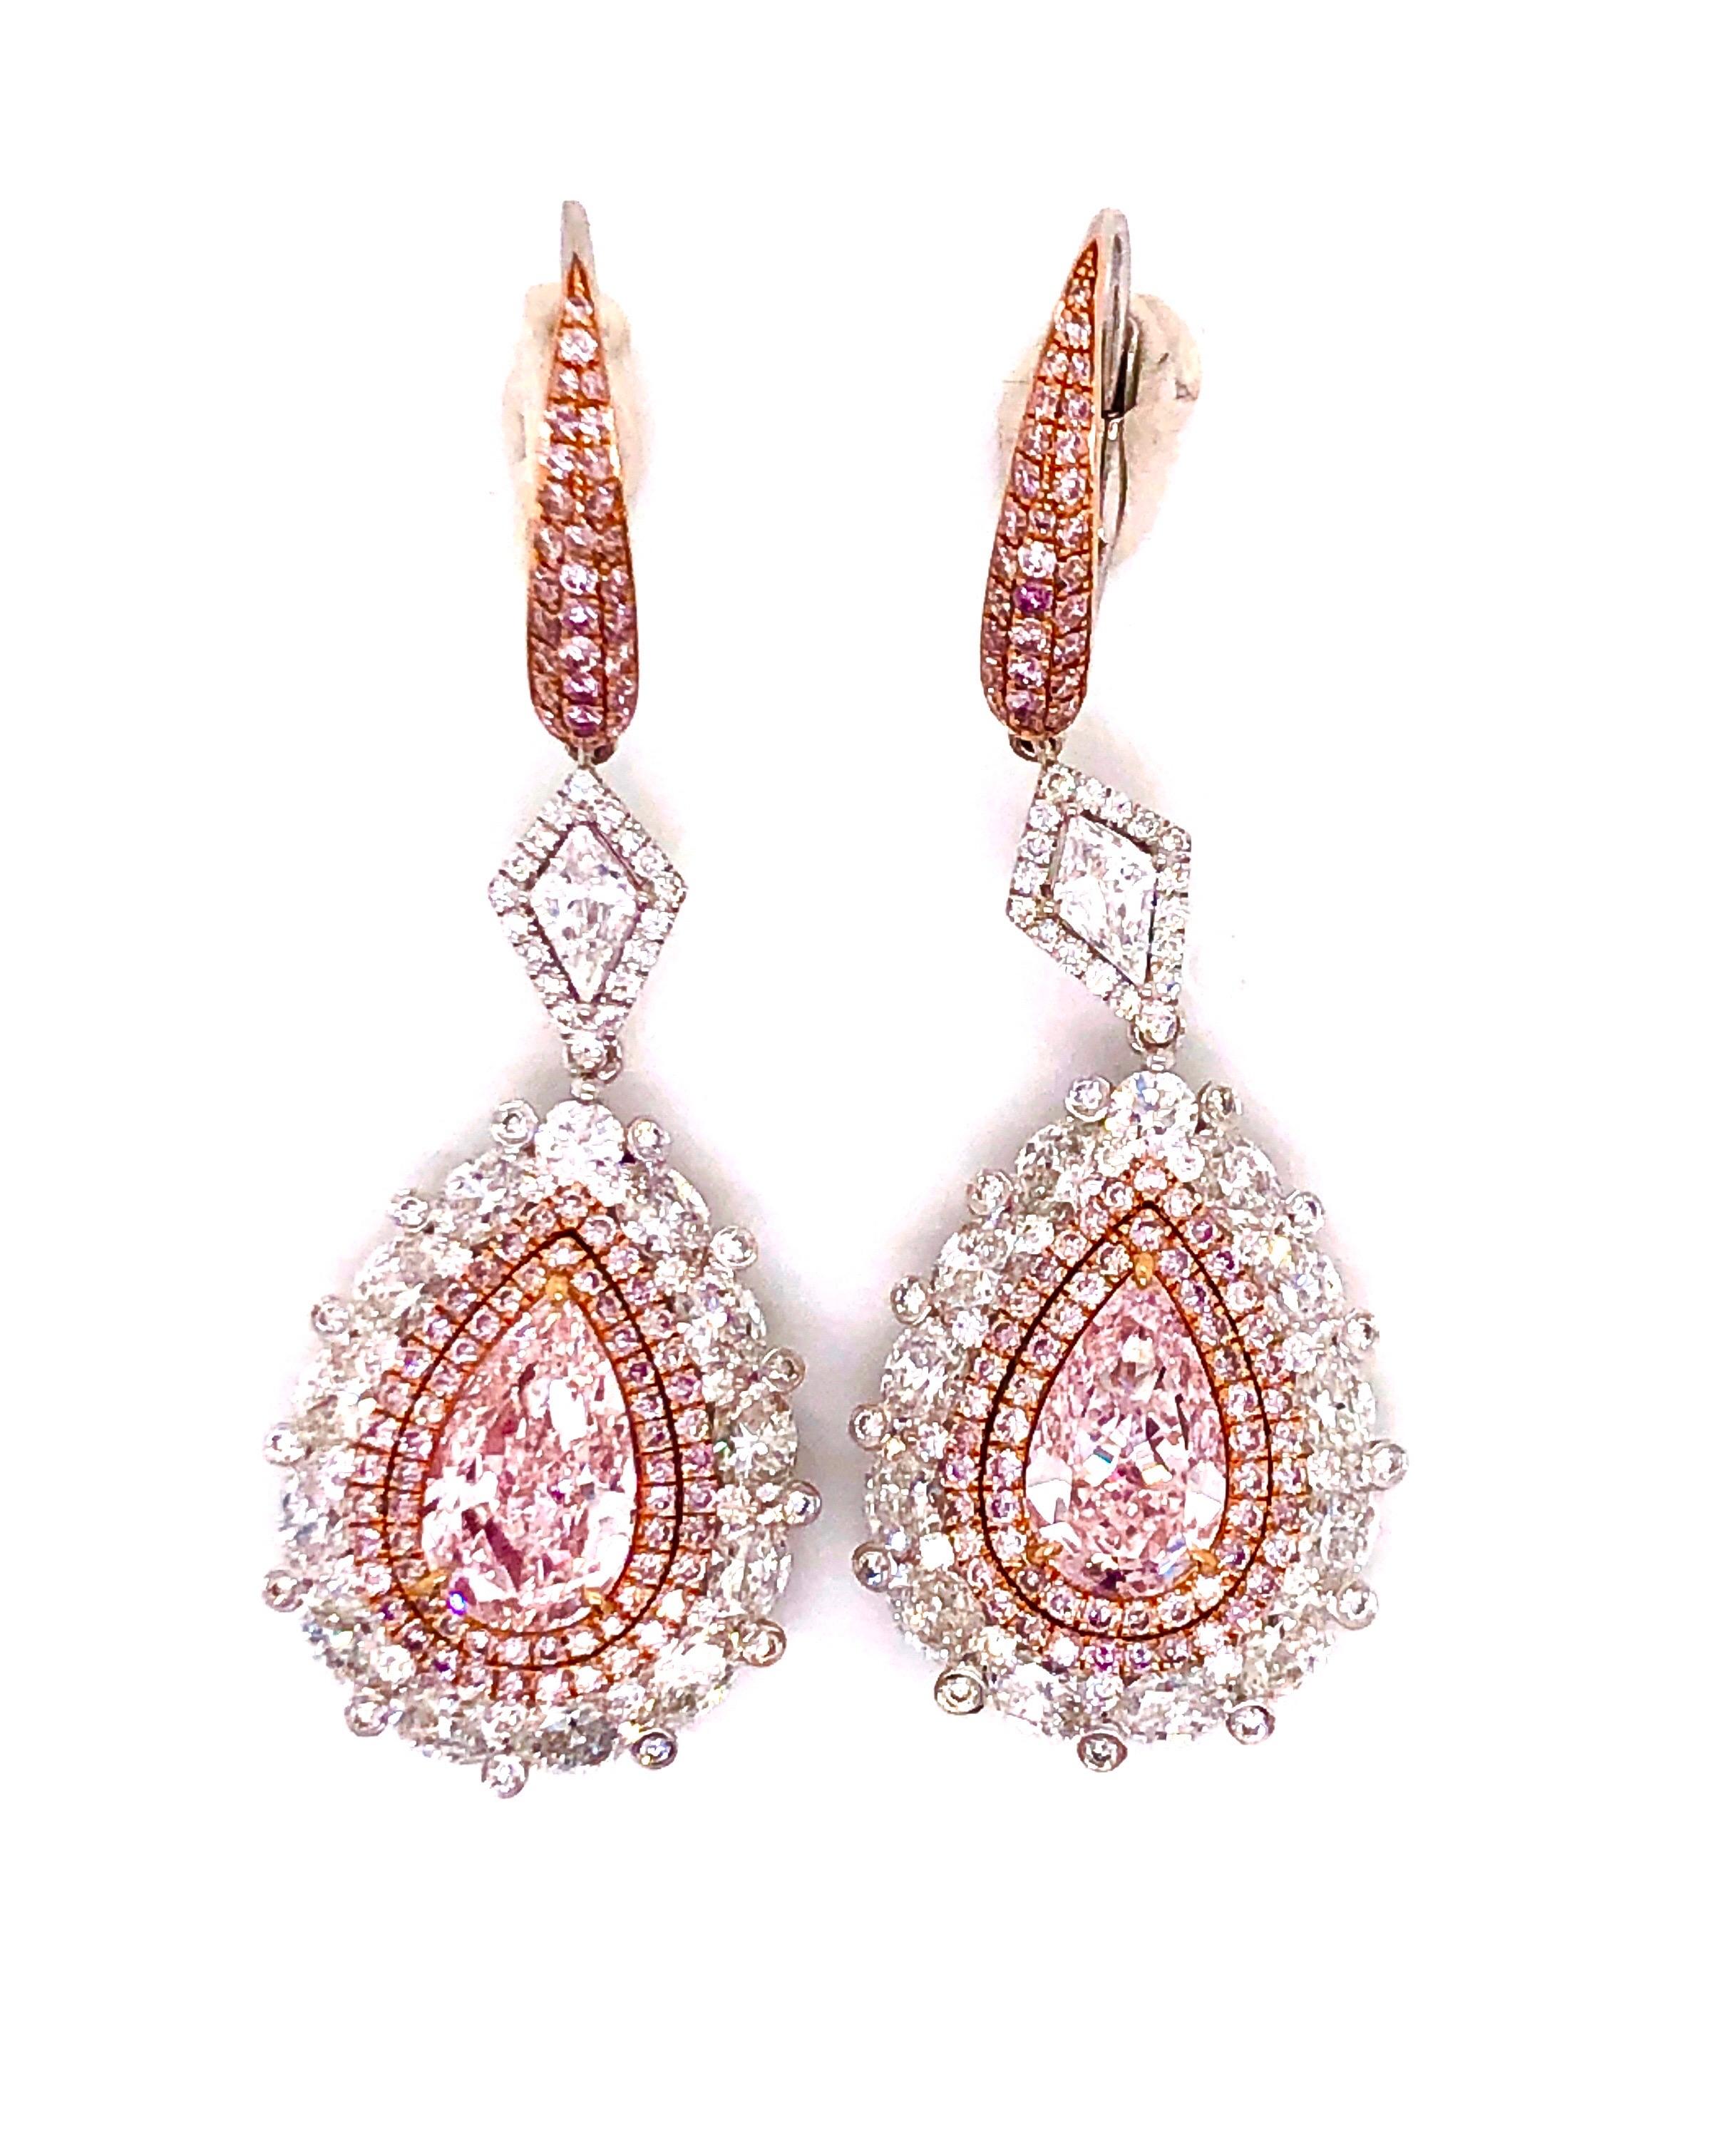 2 spektakuläre natürliche rosa Diamanten mit GIA-Zertifikat von knapp 2,50 ct für das Paar. Die Klarheit wird ausnahmsweise als vvs1/vs1 angegeben. Bitte erkundigen Sie sich nach den GIA-Zertifikaten und dem Gesamtgewicht dieser Ohrringe (mit den